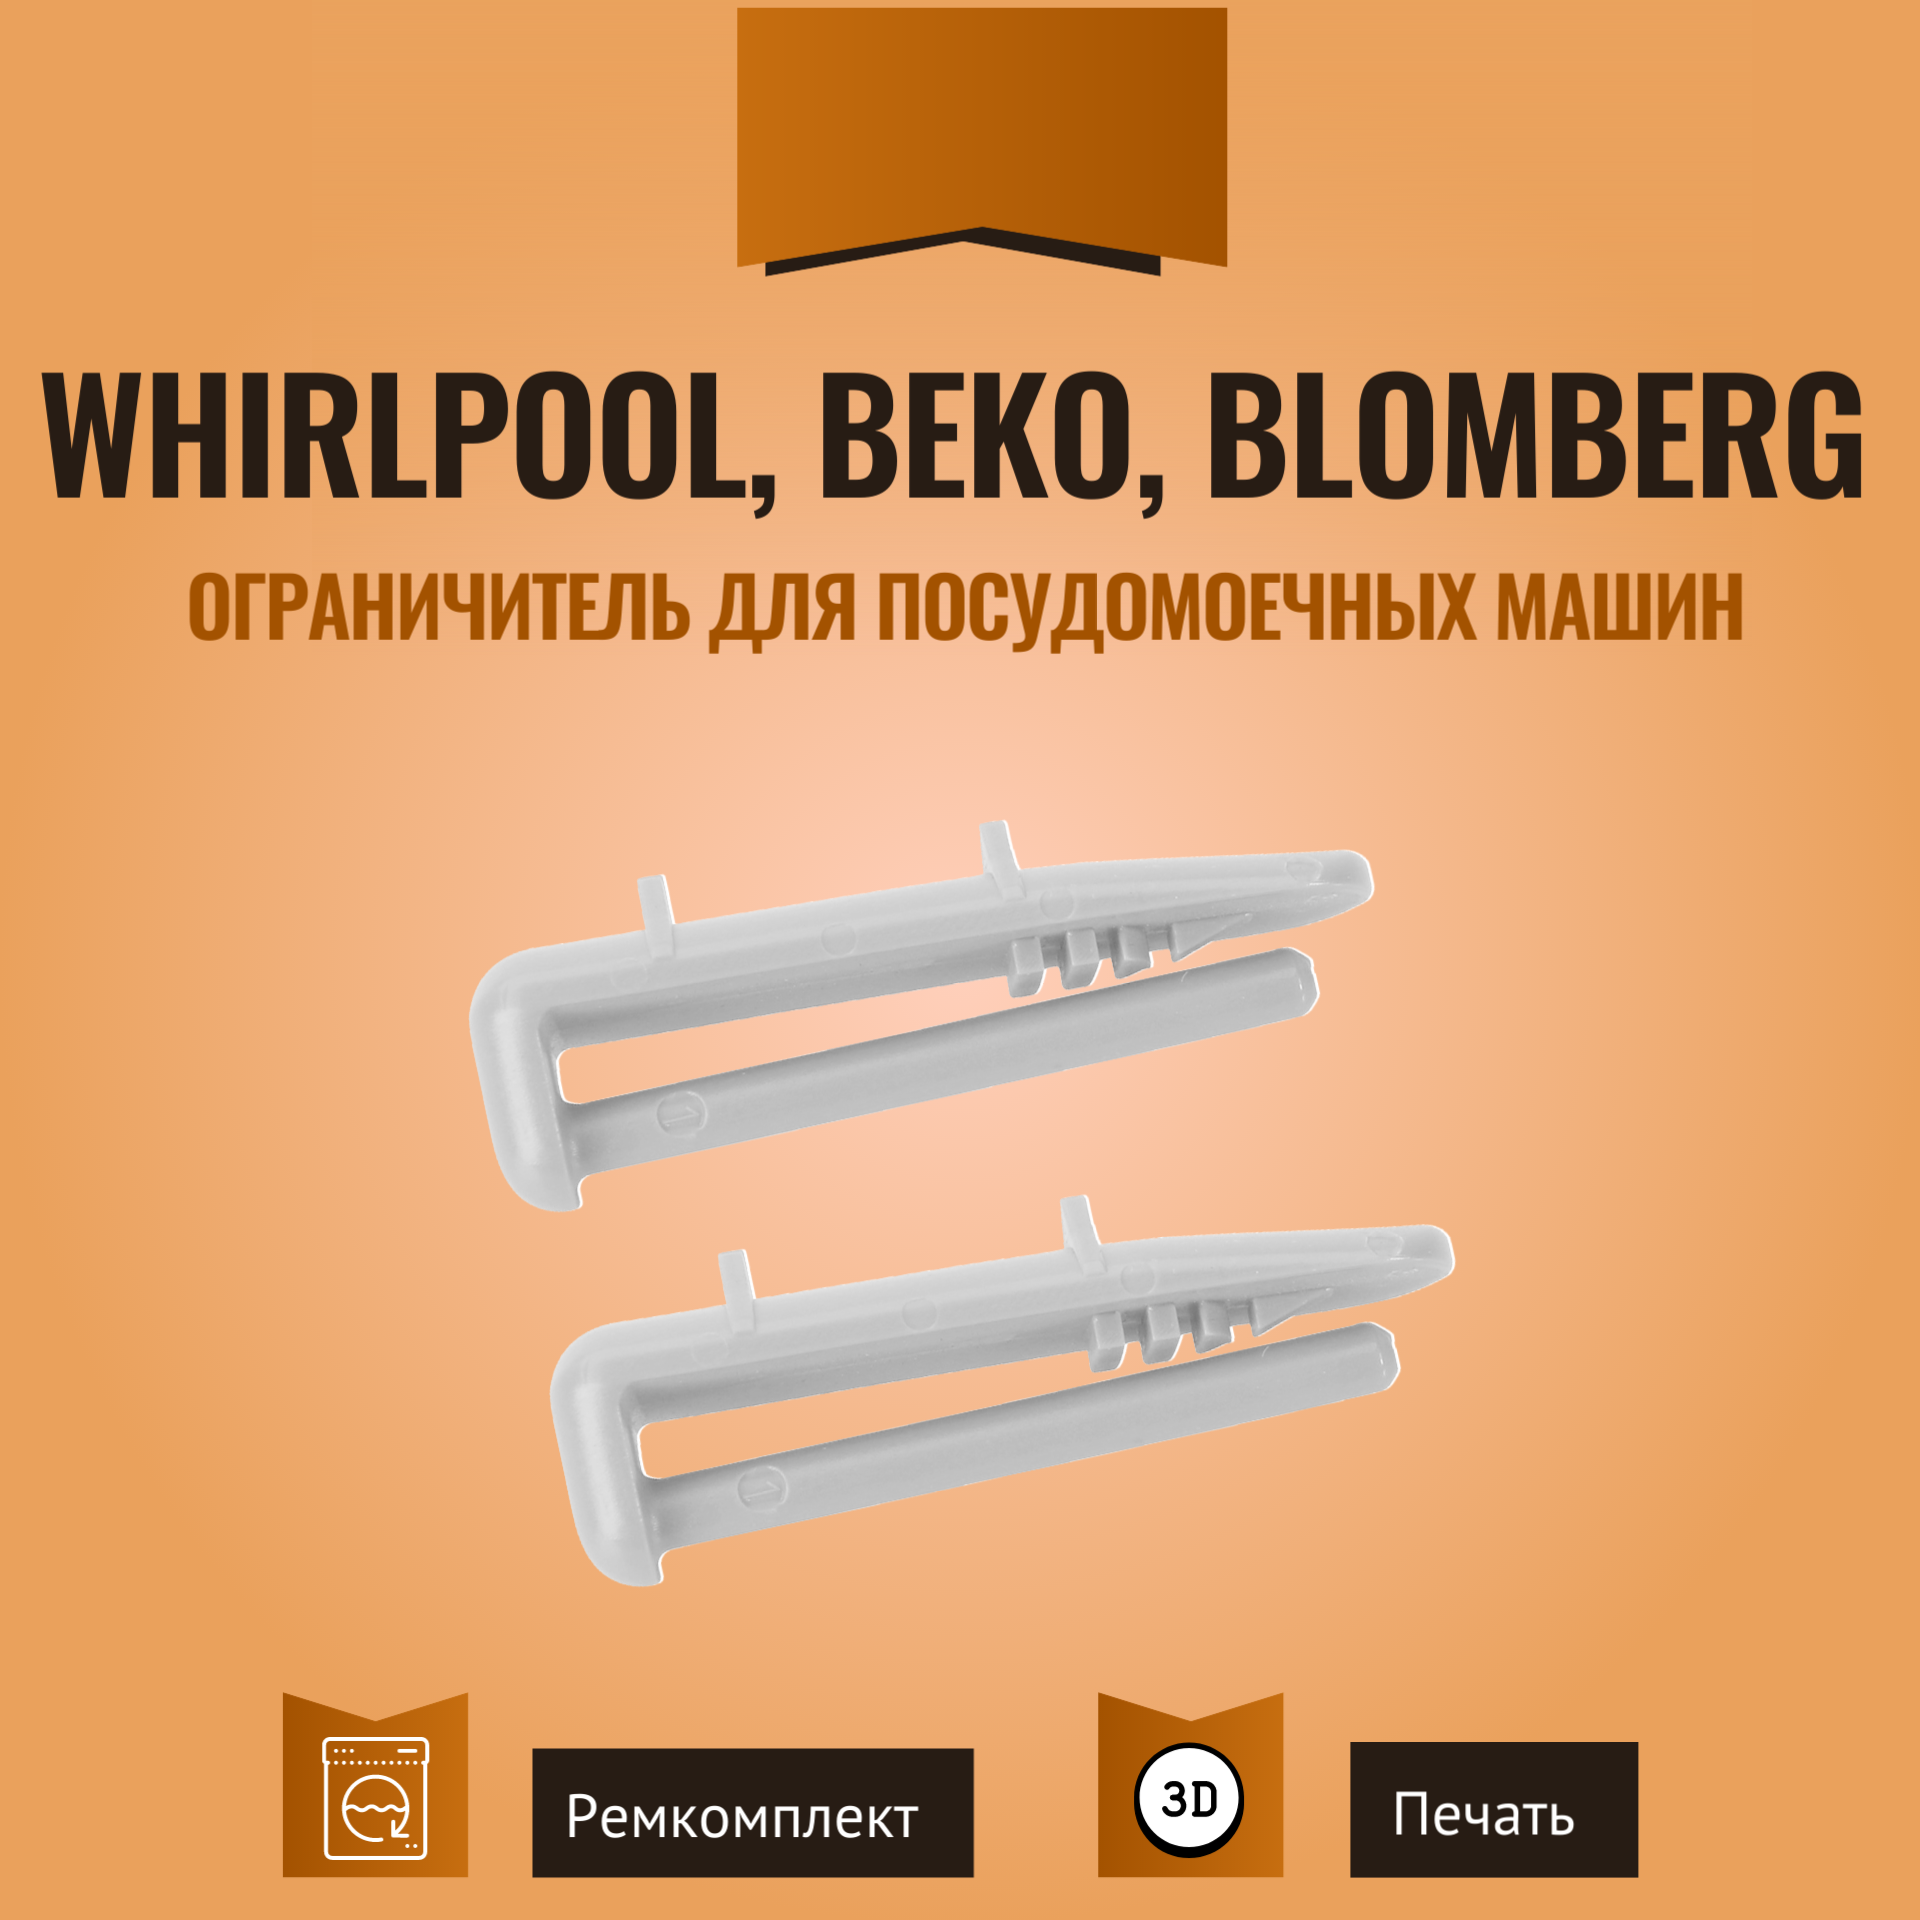 Ограничитель корзины для посудомоечных машин Whirlpool, Beko и Blomberg